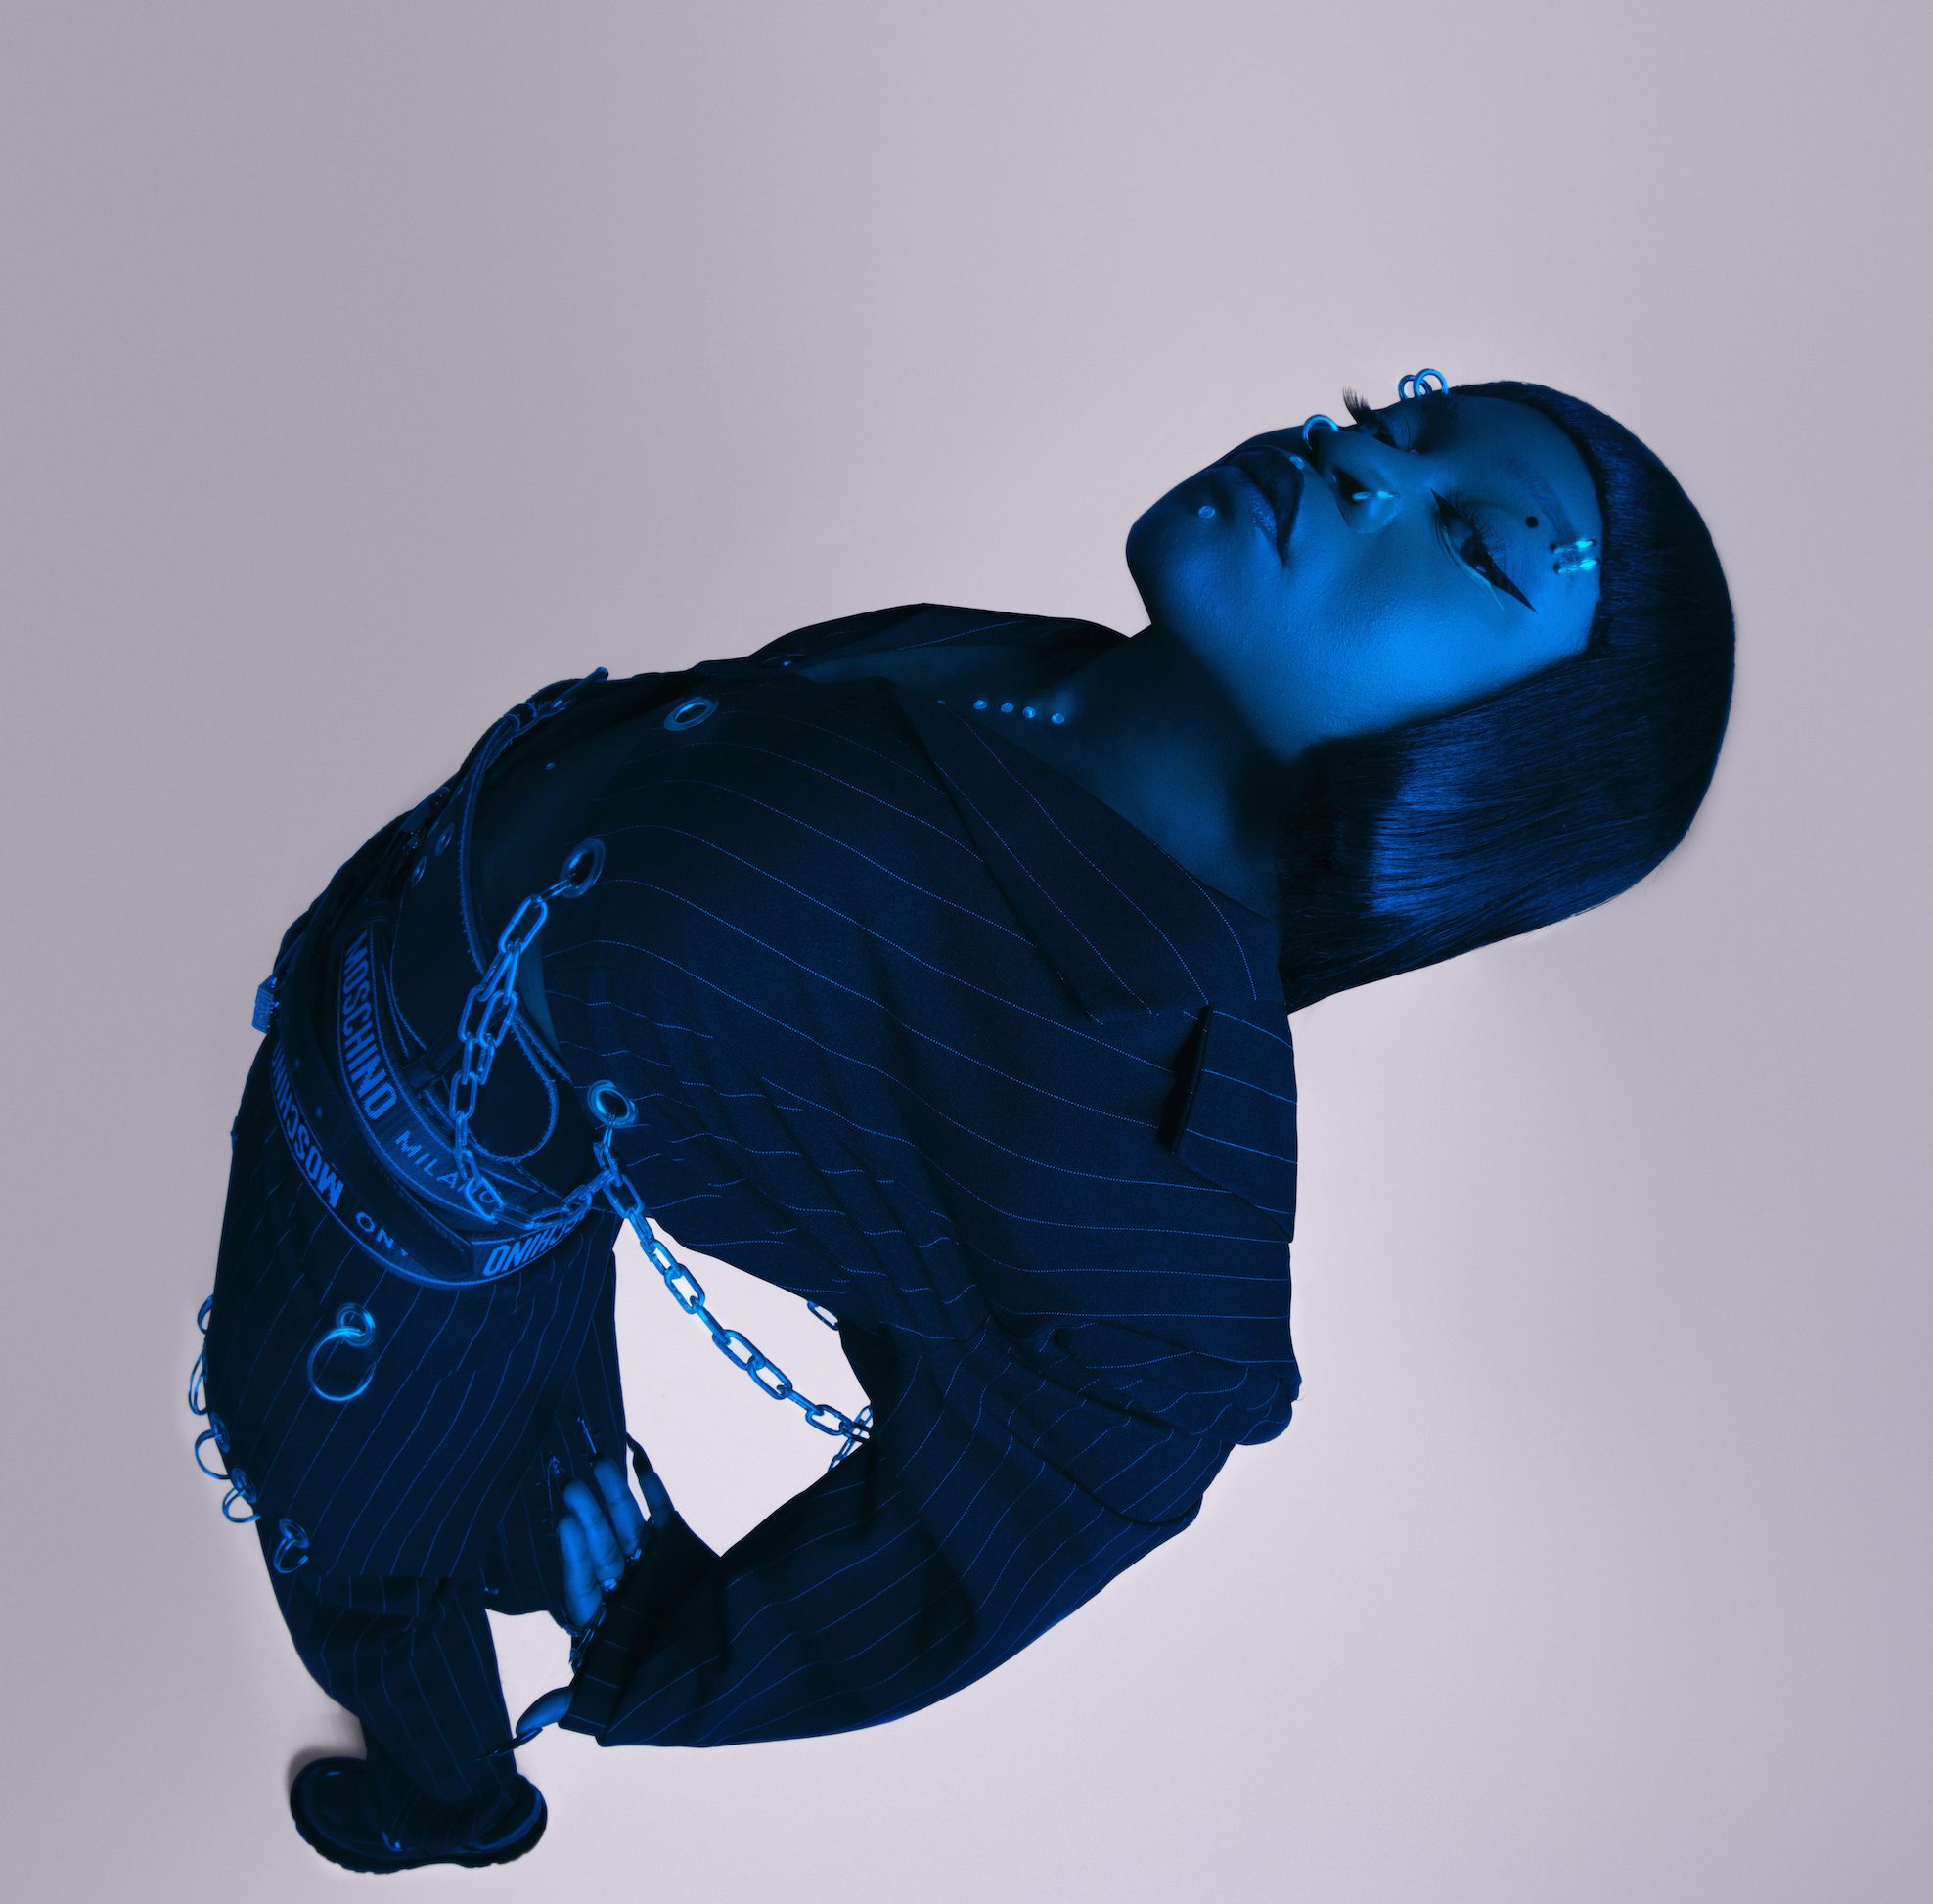 A cantora Sampa The Great é negra, está com os cabelos lisos, usa terno risca-de-giz e correntes e faixas com nomes de marcas como Moschino na cintura. A foto é tirada de cima, e ela está com as costas e os braços para trás. Uma luz azul deixa a artista com cor azulada.